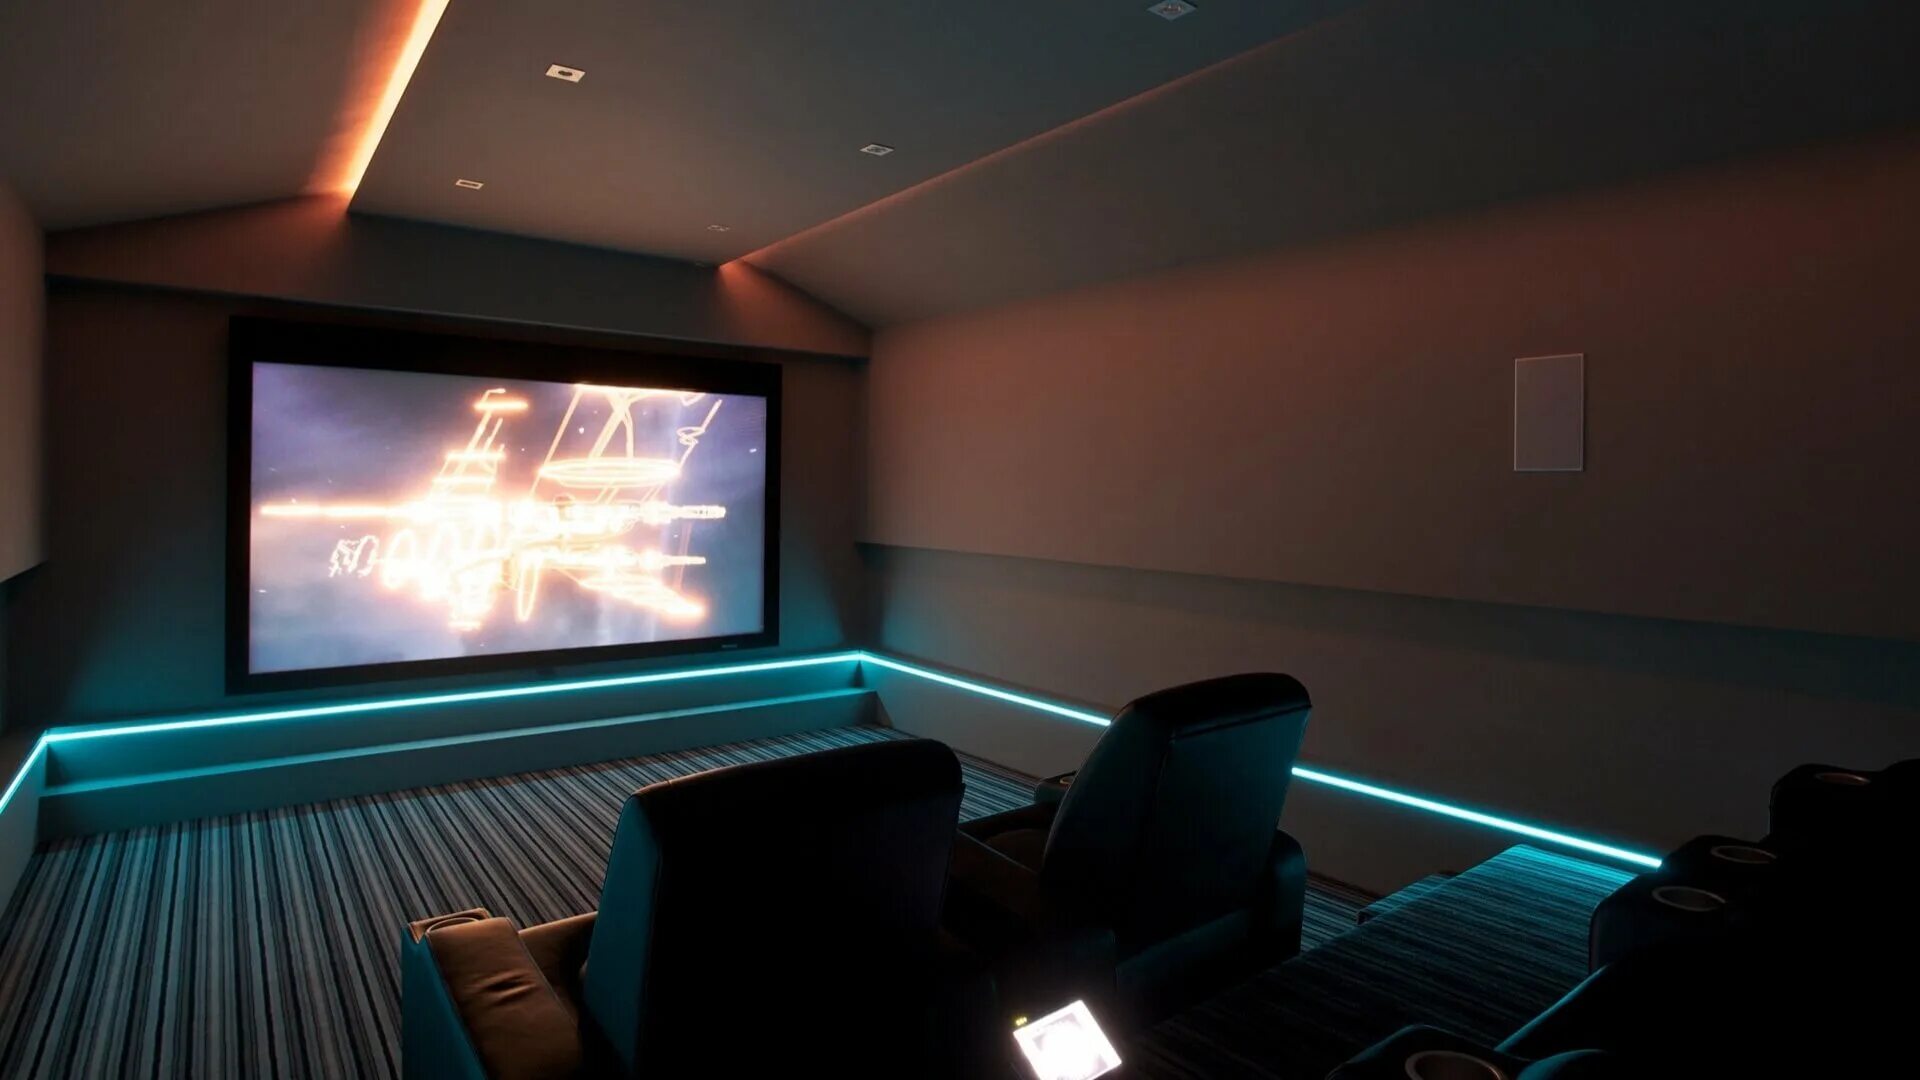 Проектор в домашних условиях. Комната с проектором в кинотеатре. Игровая комната с проектором. Стена в кинотеатре. Маленькая комната с проектором.